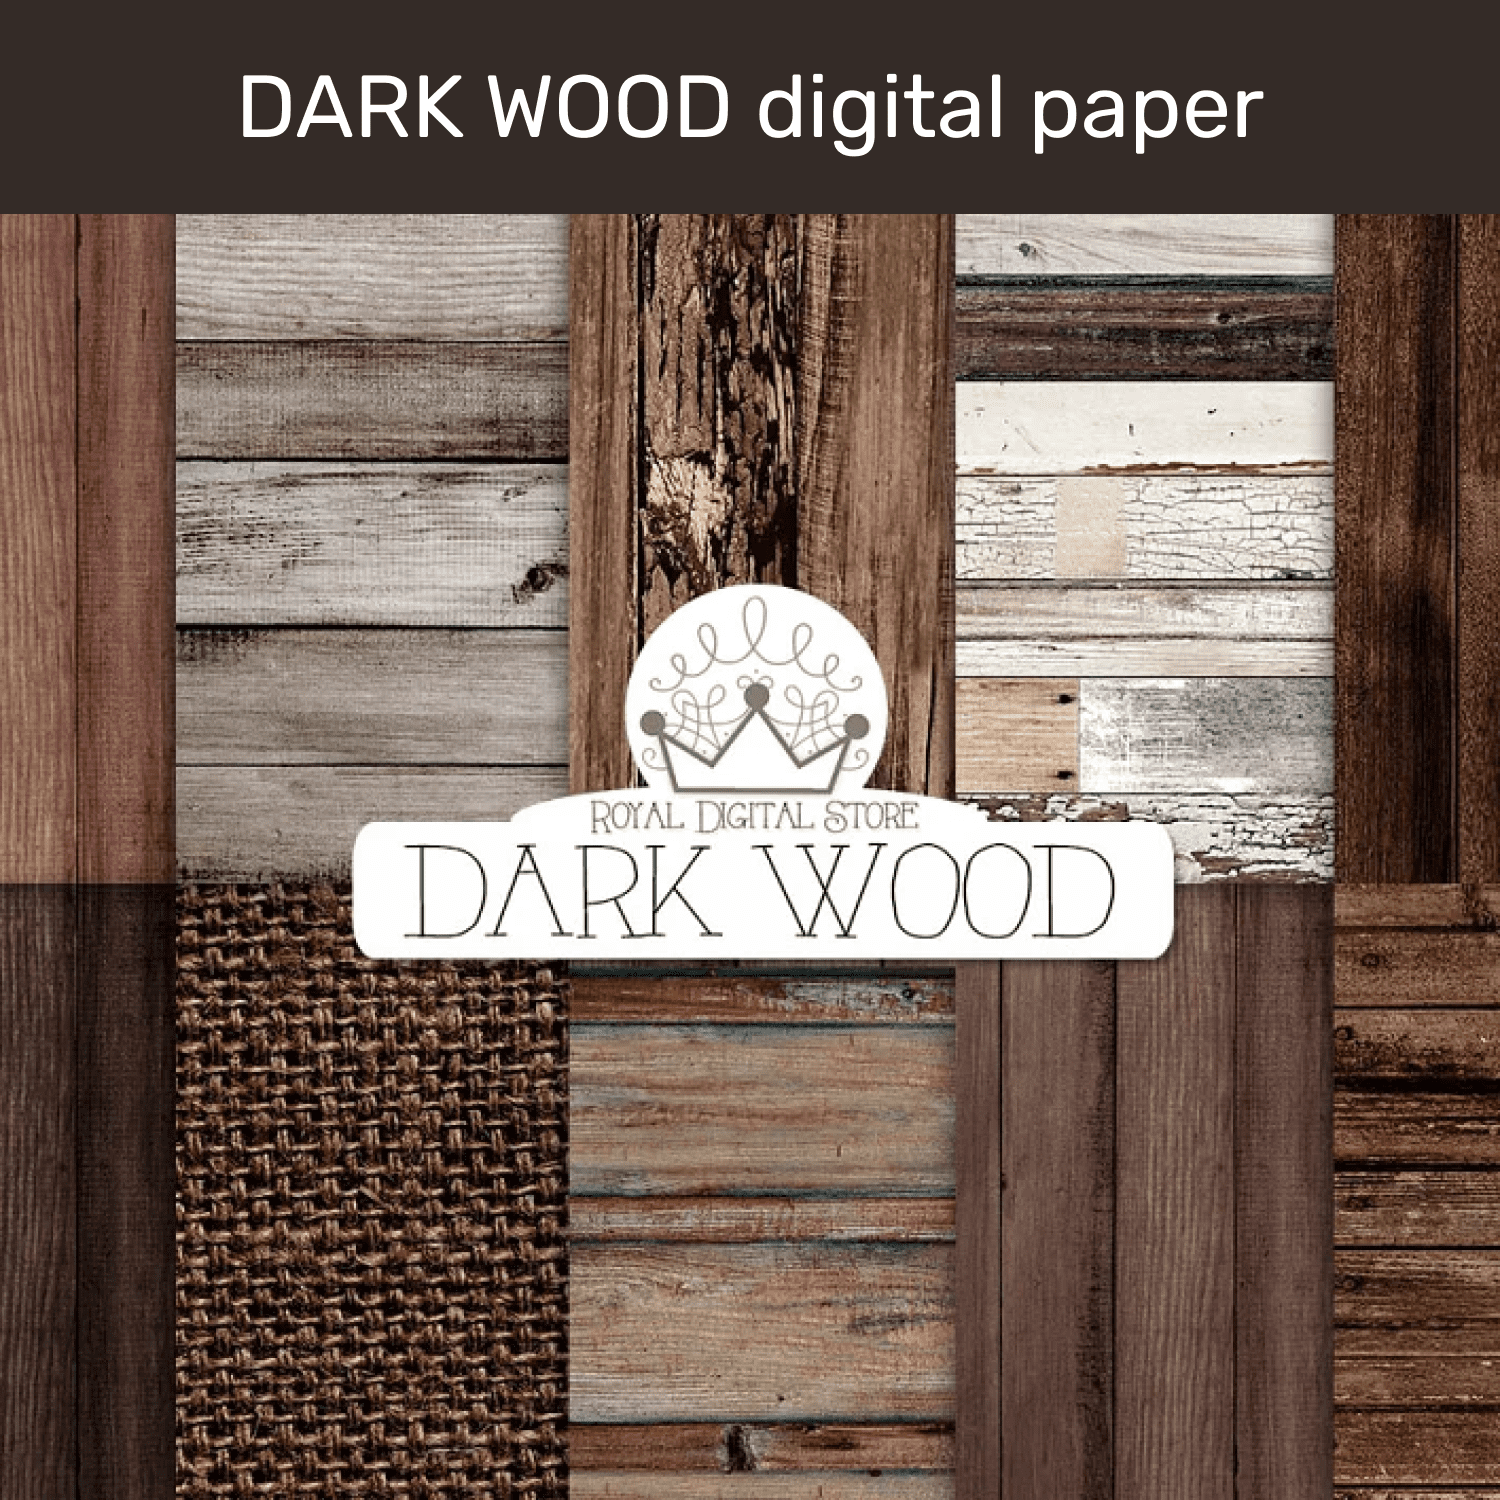 DARK WOOD digital paper cover.